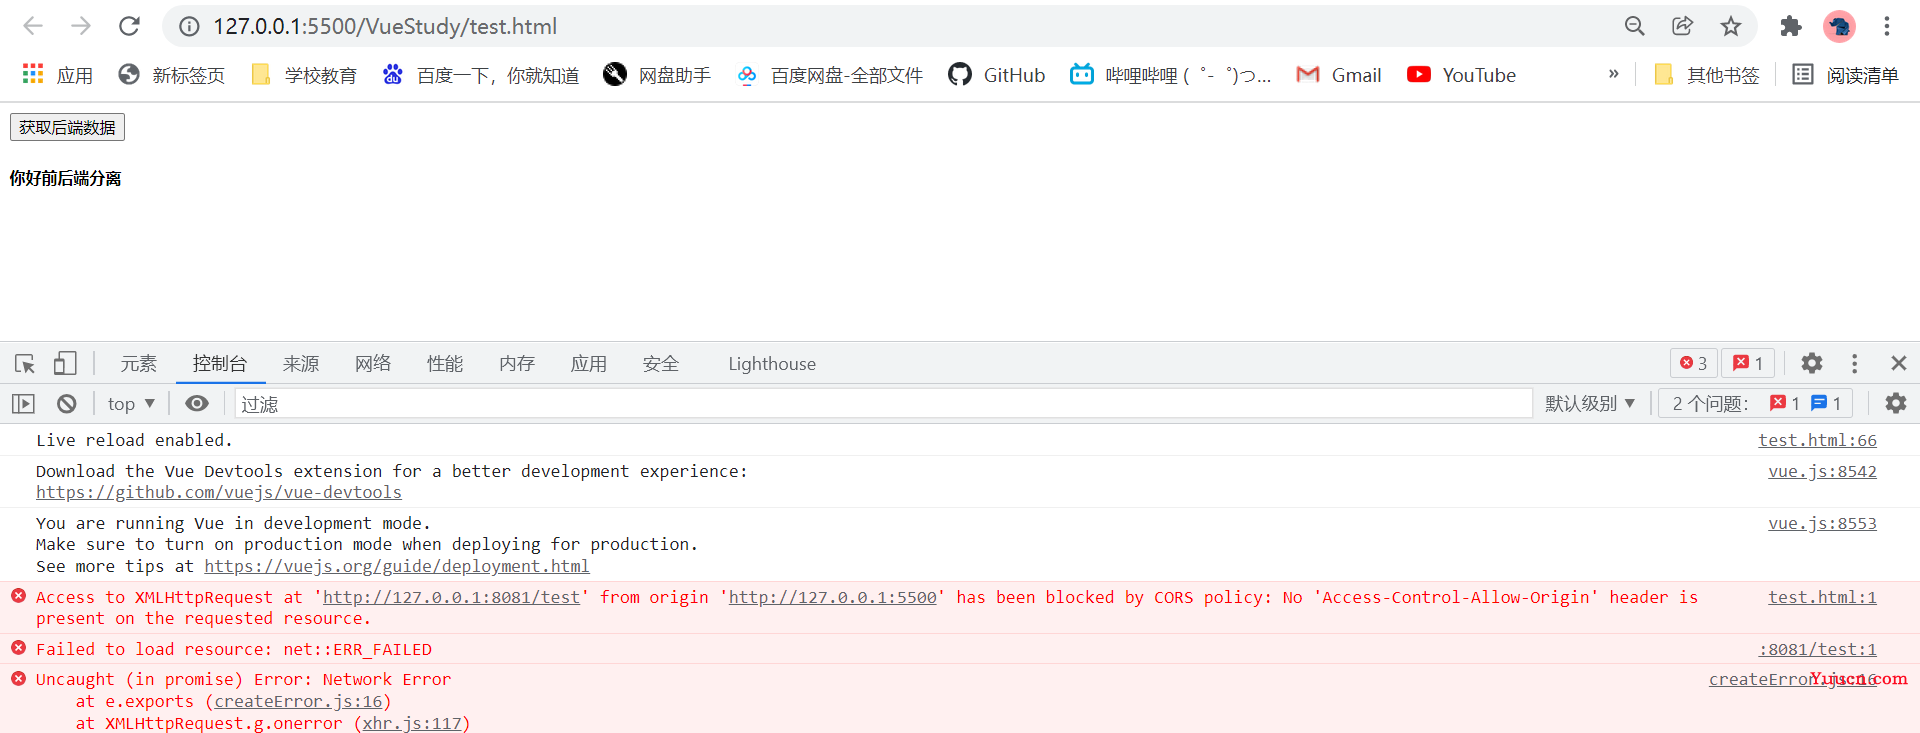 解决has been blocked by CORS policy: No ‘Access-Control-Allow-Origin’报错跨域问题